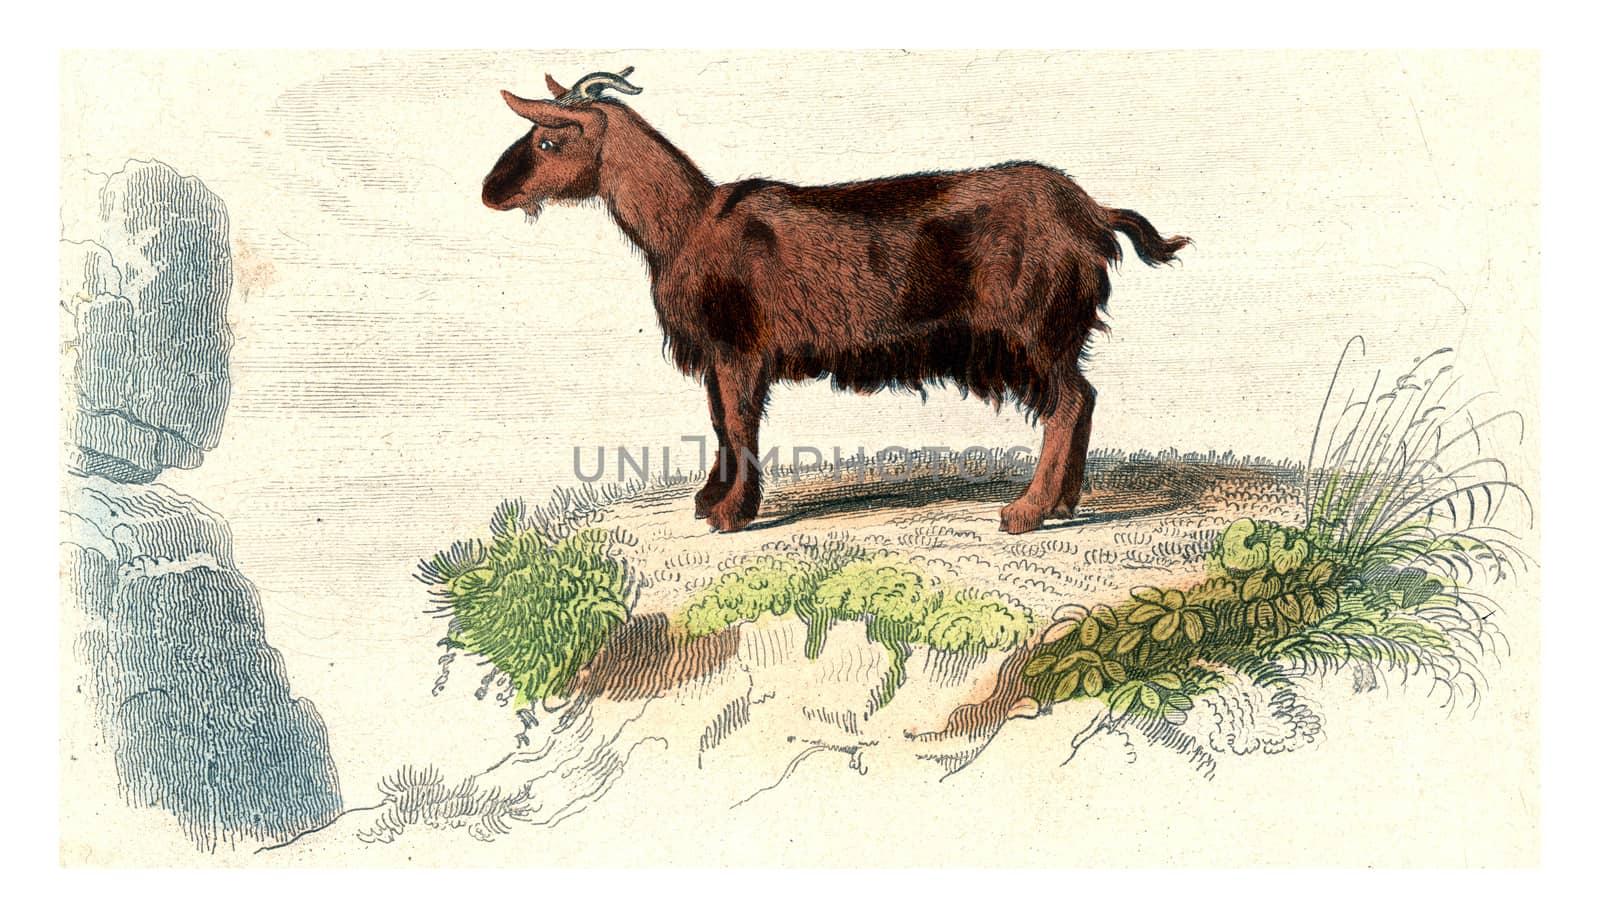 Goat of Judah, vintage engraving by Morphart